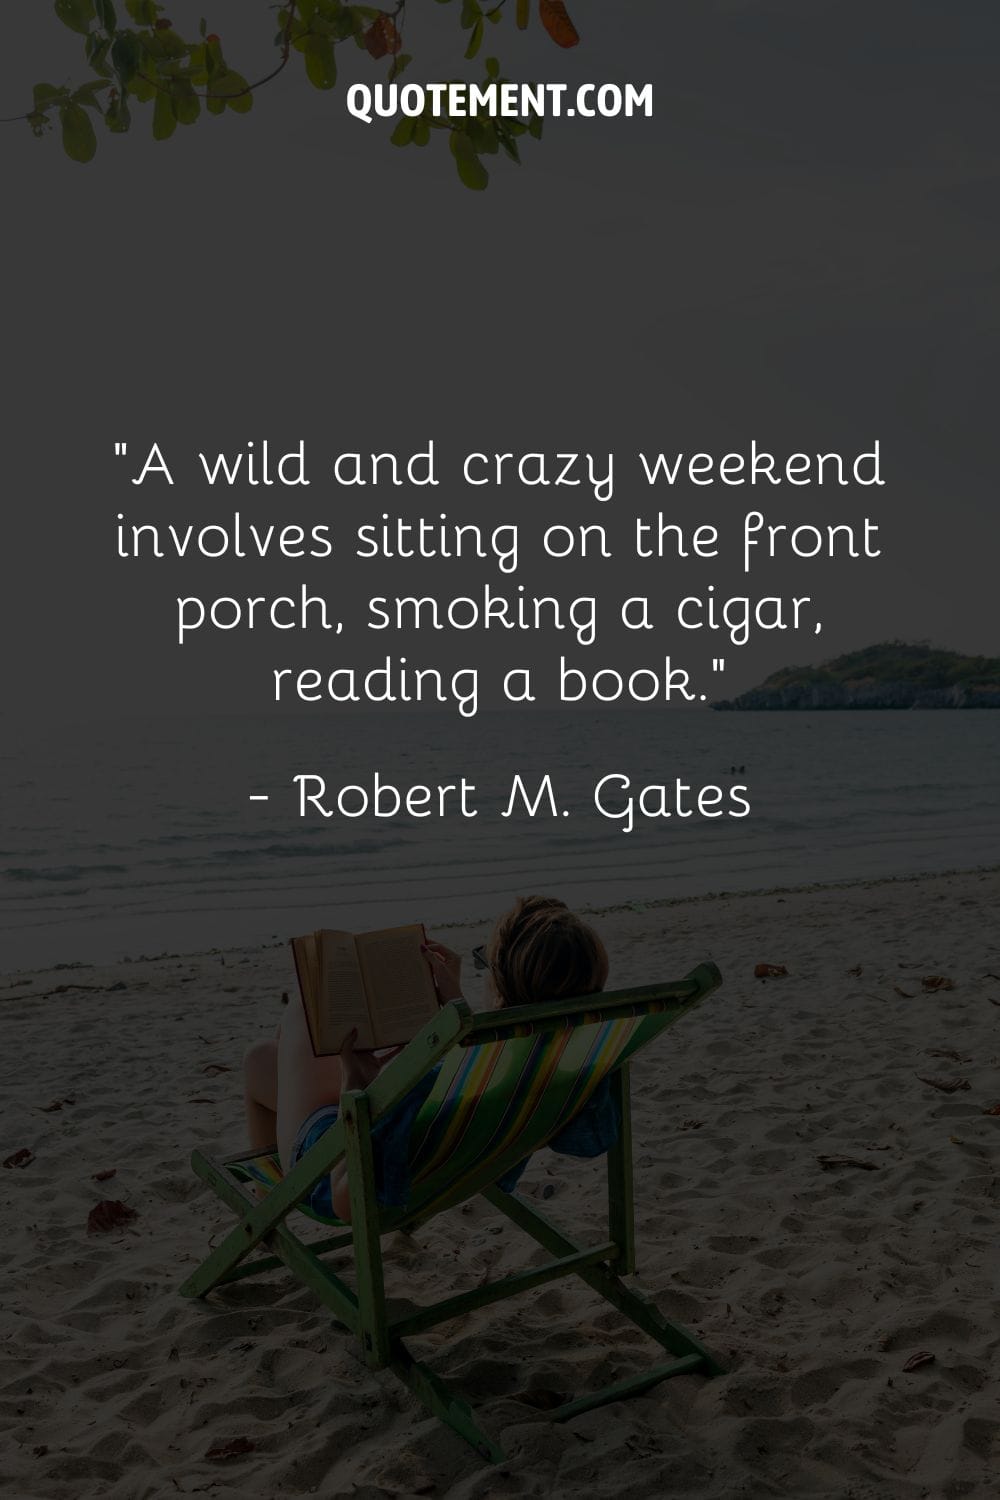 un fin de semana salvaje y loco implica sentarse en el porche, fumar un puro, leer un libro